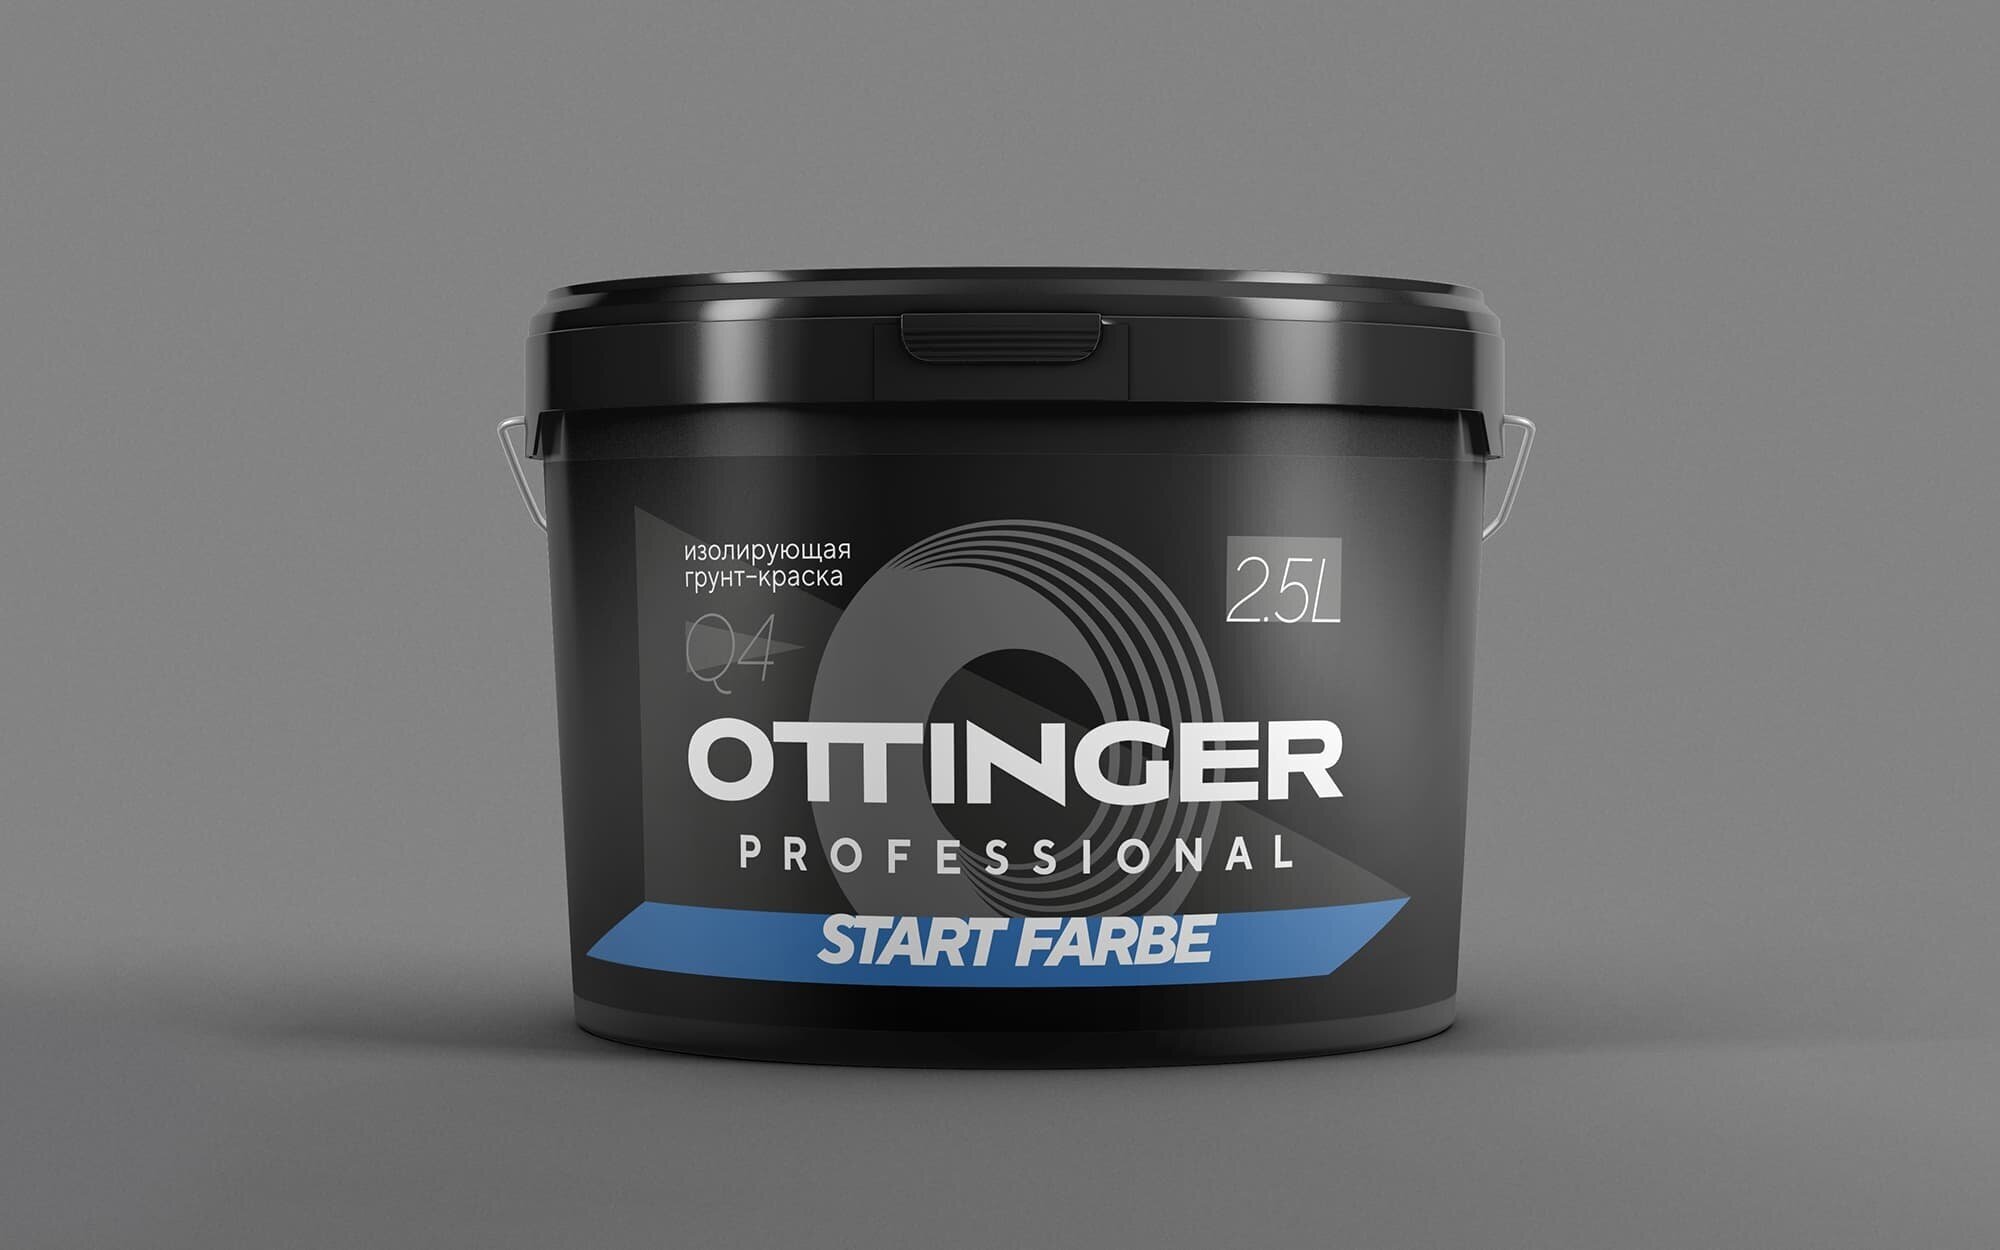 Грунт OTTINGER START FARBE Q4 база 1 функциональная грунт-краска 2.5 литра